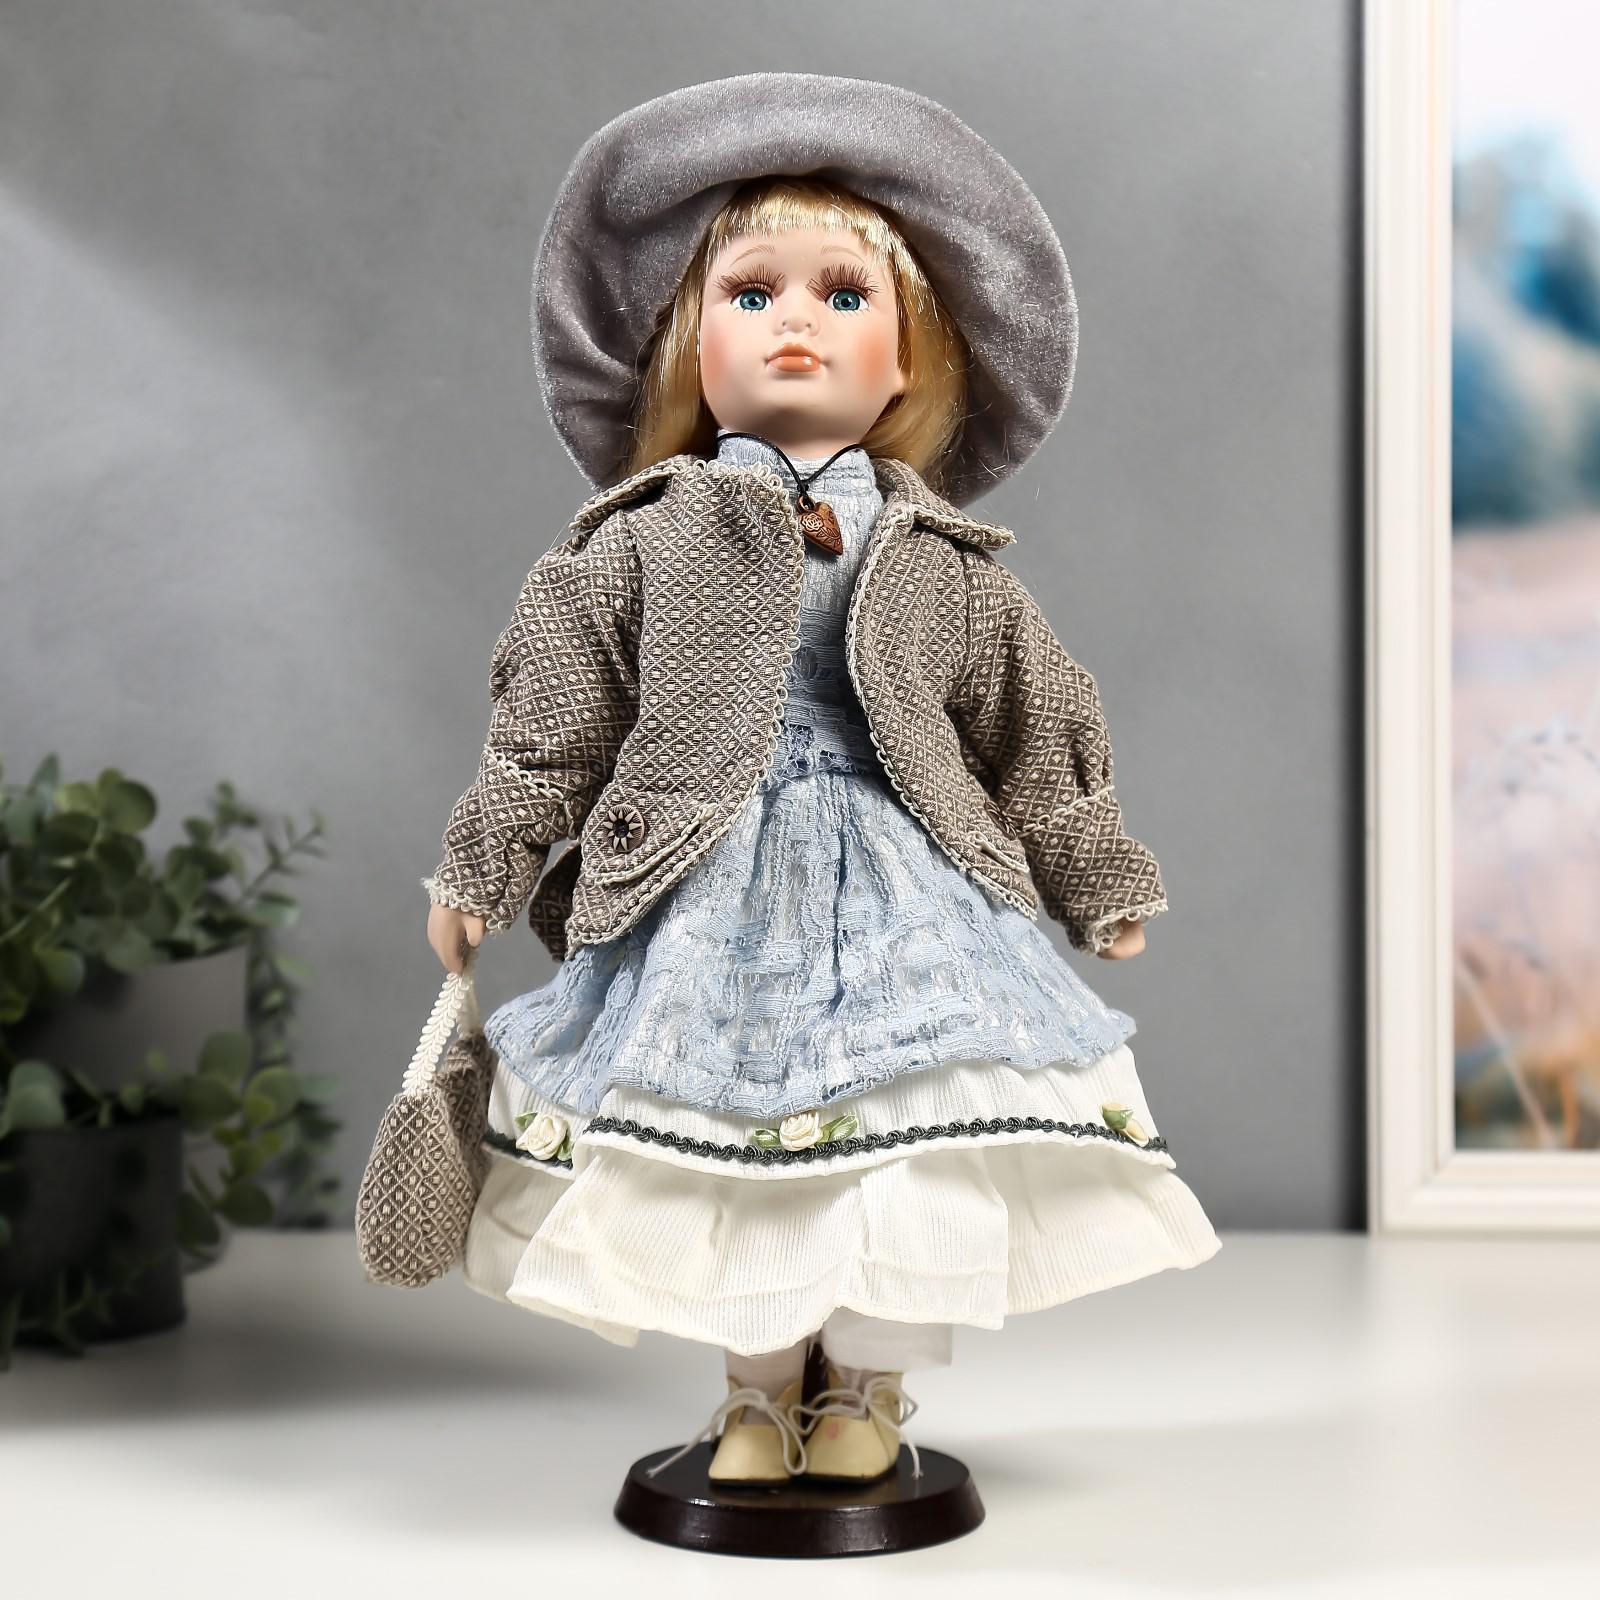 Кукла коллекционная Зимнее волшебство керамика «Лиза в голубом кружевном платье и серой курточке» 40 см - фото 1